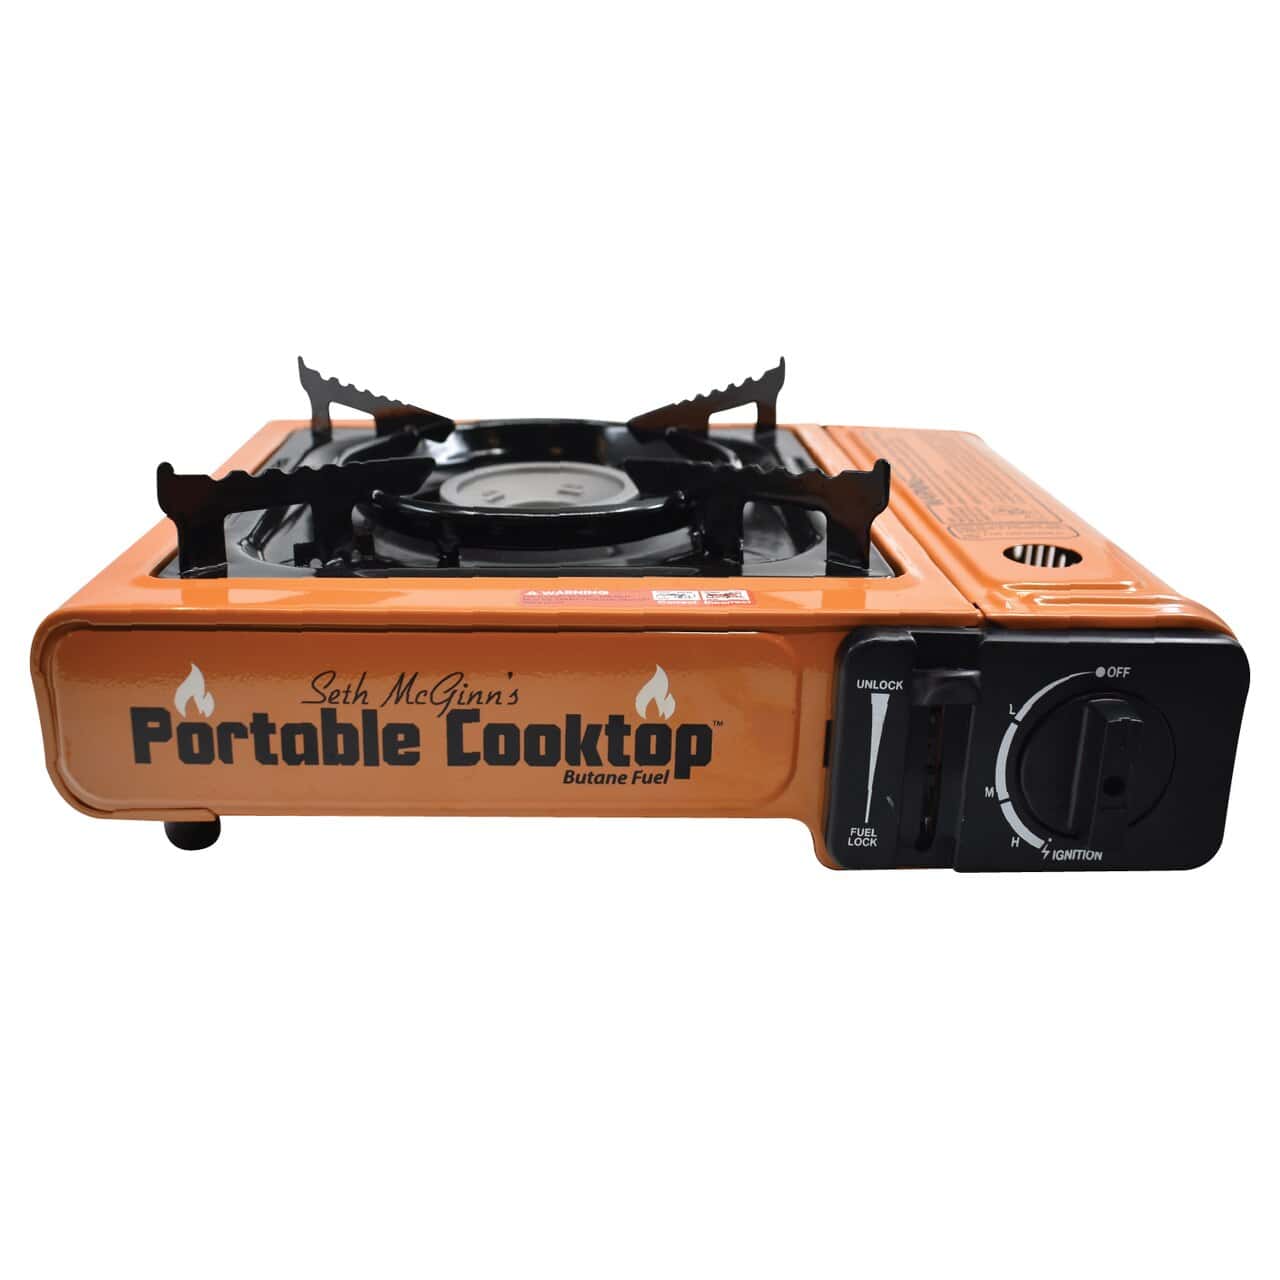 CanCooker Portable Butane Cooktop